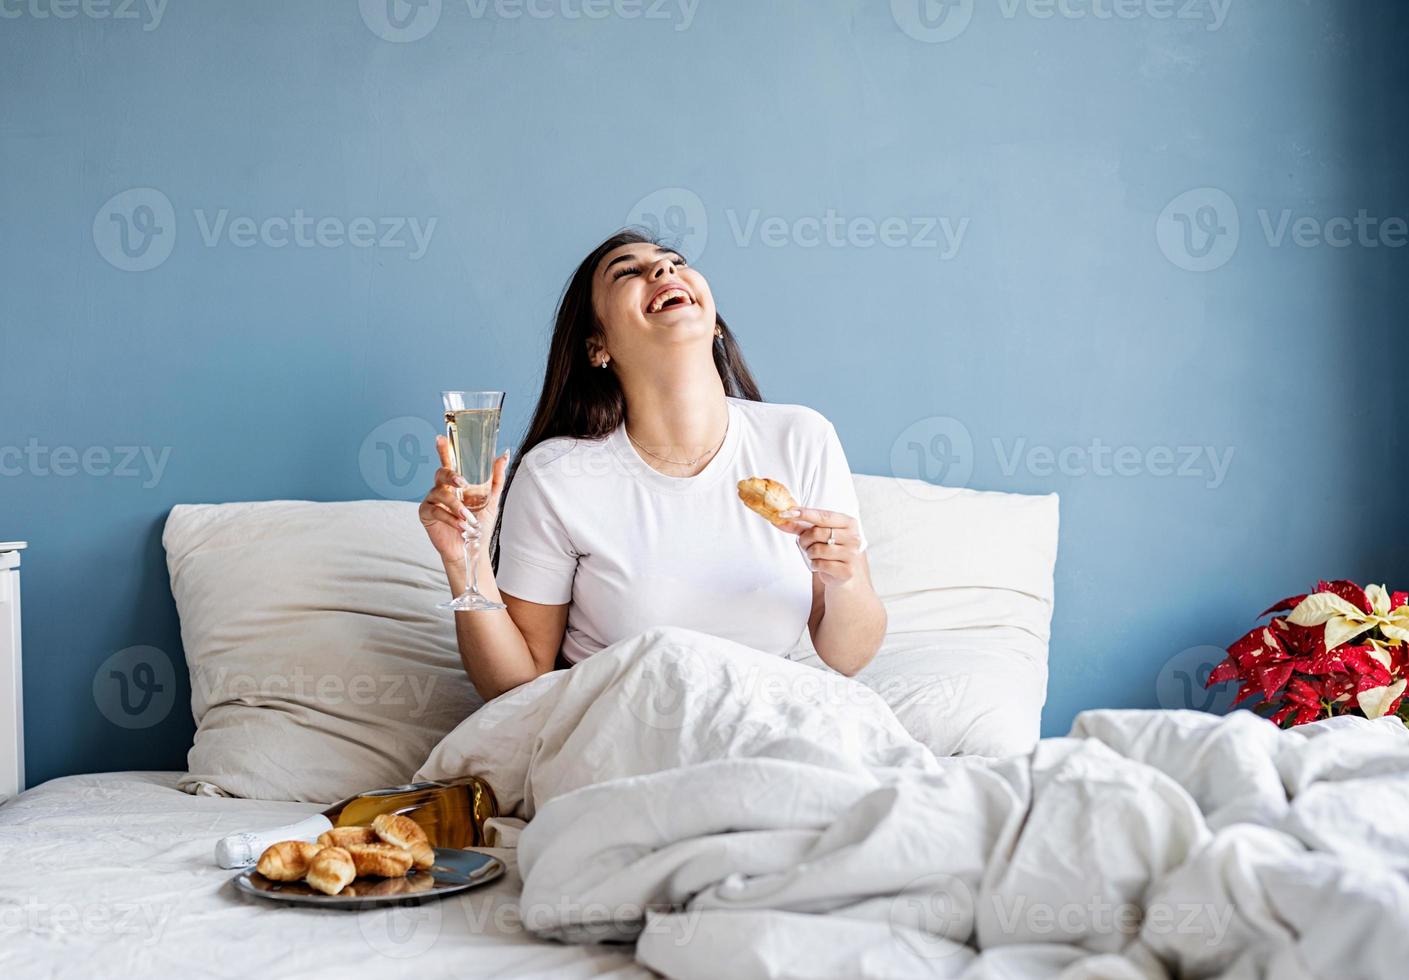 Junge brünette Frau sitzt wach im Bett mit roten herzförmigen Luftballons und Dekorationen trinkt Champagner und isst Croissants foto